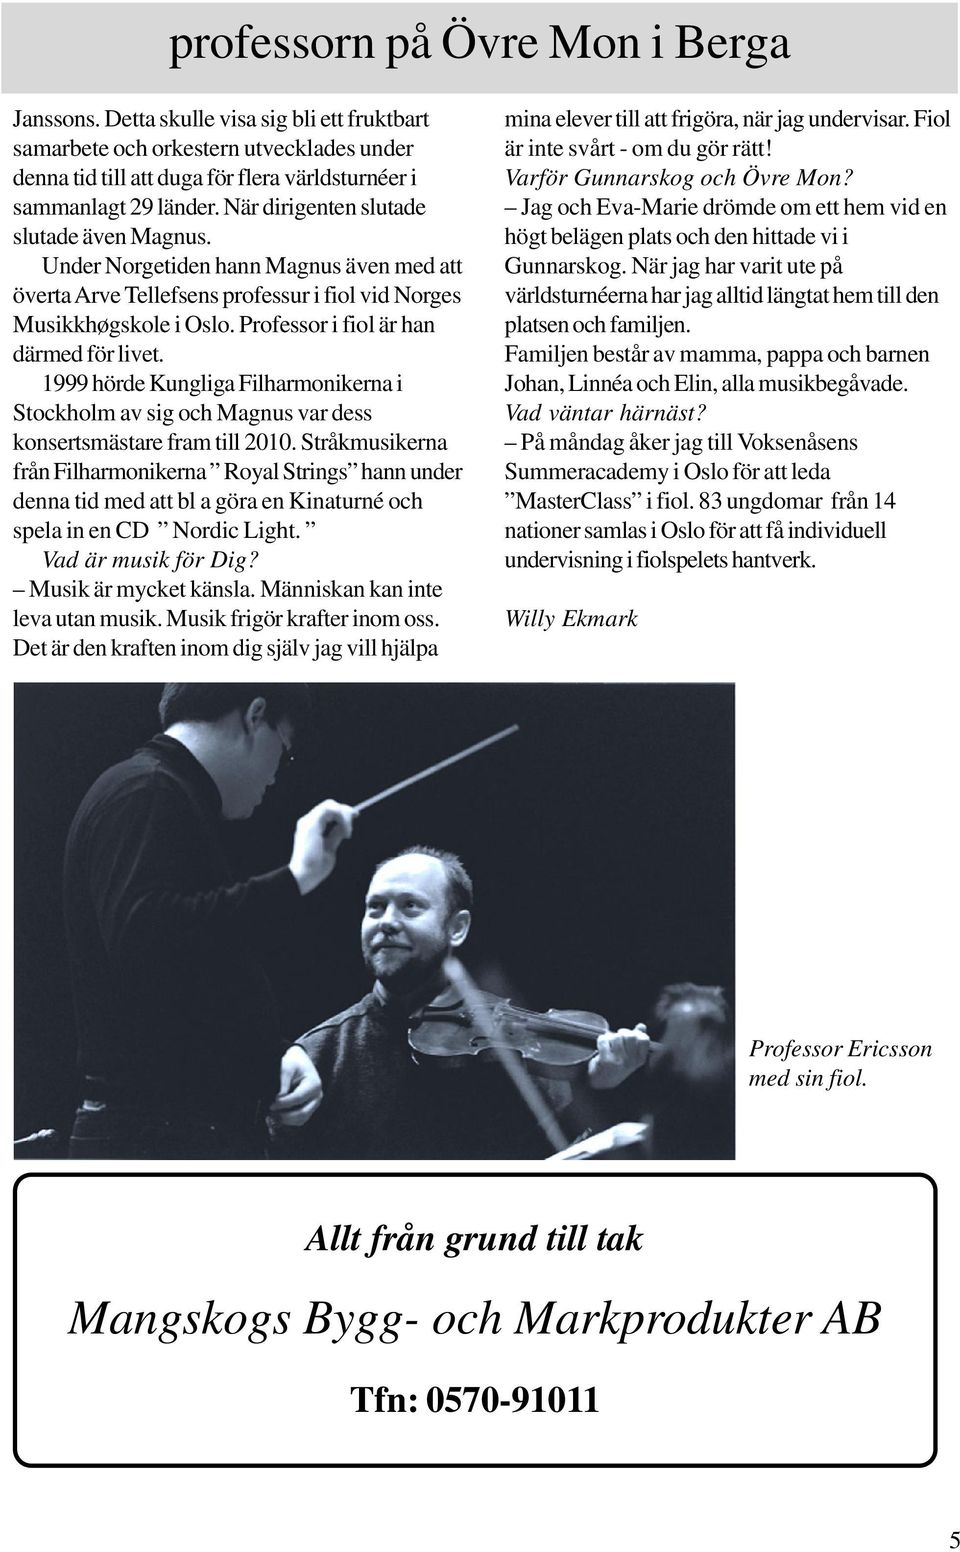 Professor i fiol är han därmed för livet. 1999 hörde Kungliga Filharmonikerna i Stockholm av sig och Magnus var dess konsertsmästare fram till 2010.